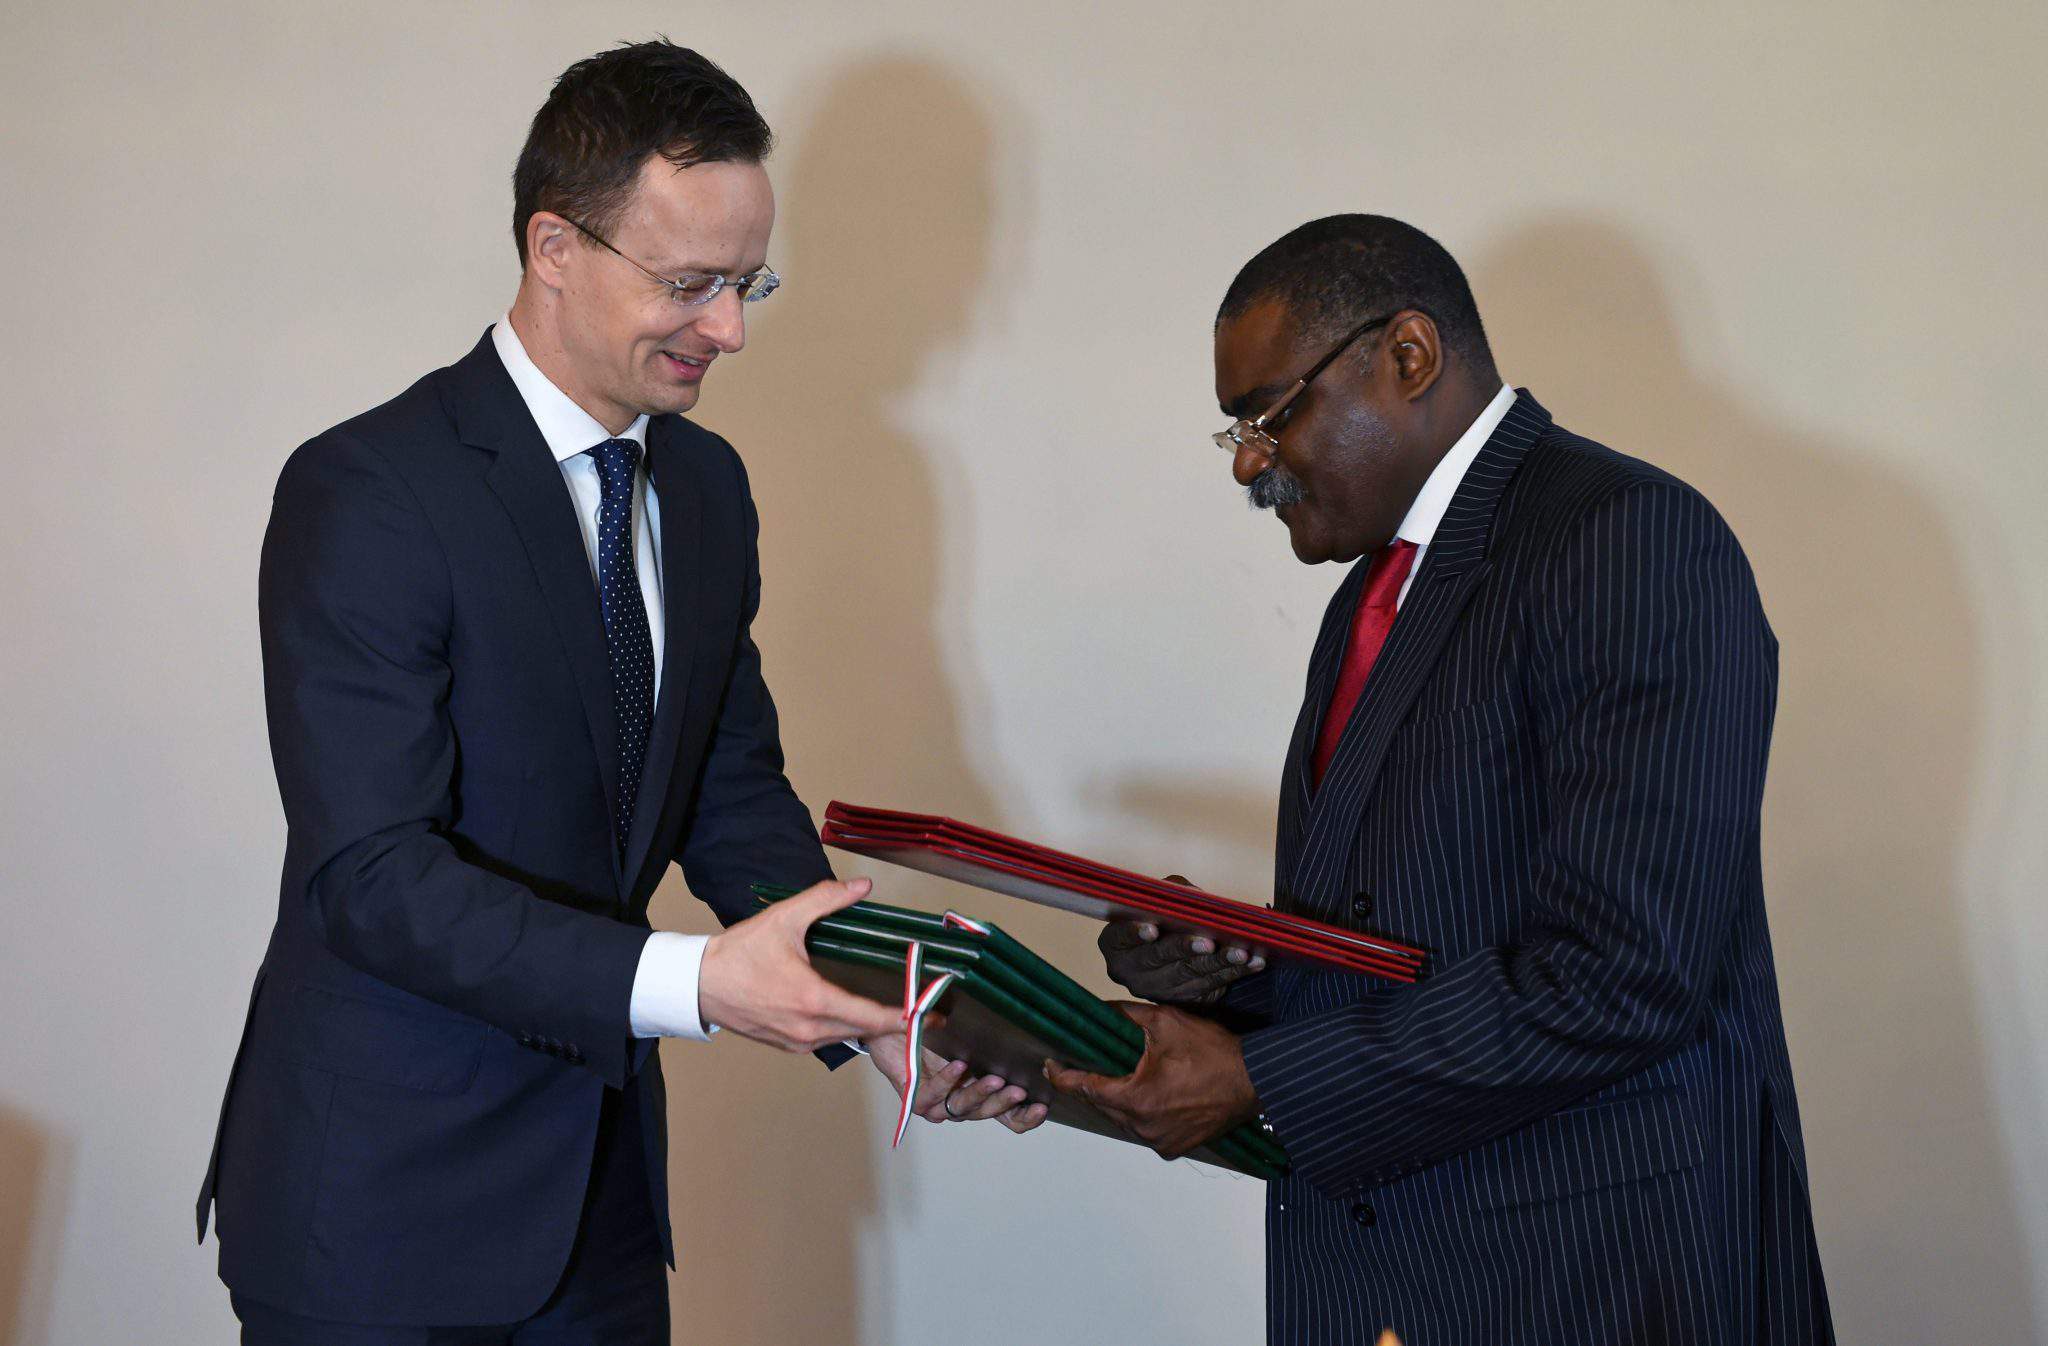 Maďarsko znovu otevřelo ambasádu v Angole